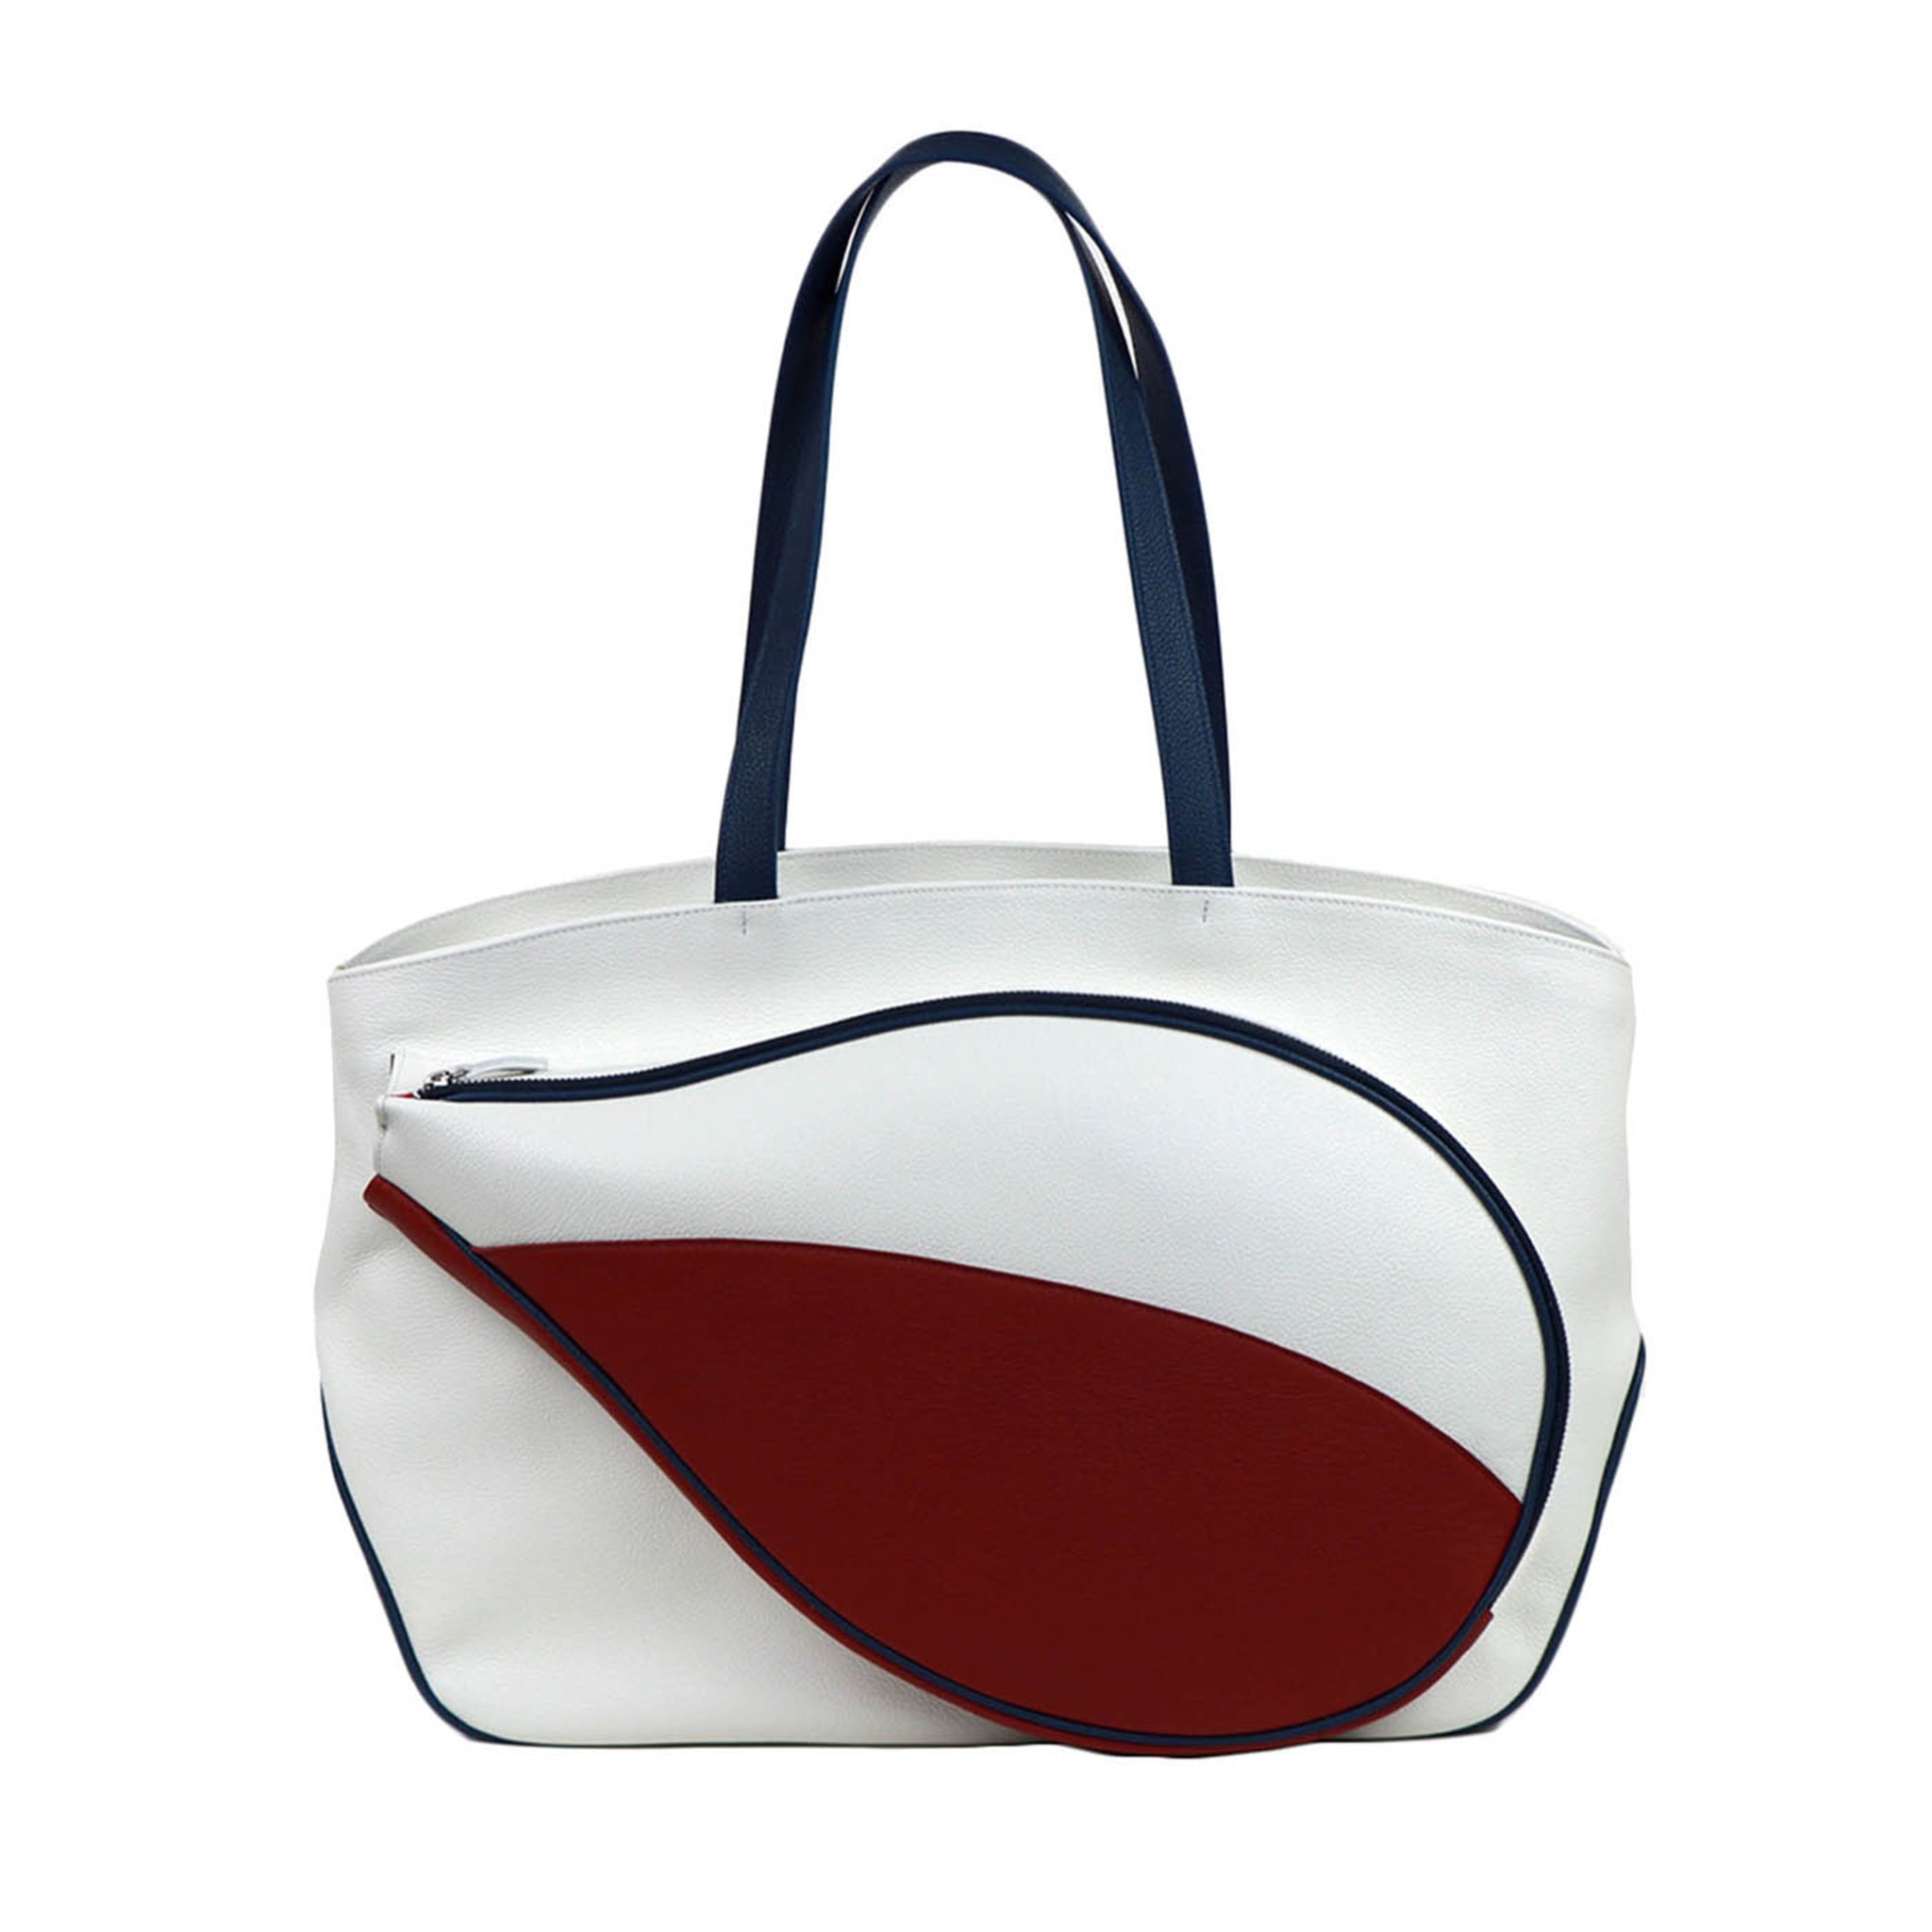 Sporttasche Weiß/Rot/Blau mit Tasche in Form eines Tennisschlägers - Hauptansicht